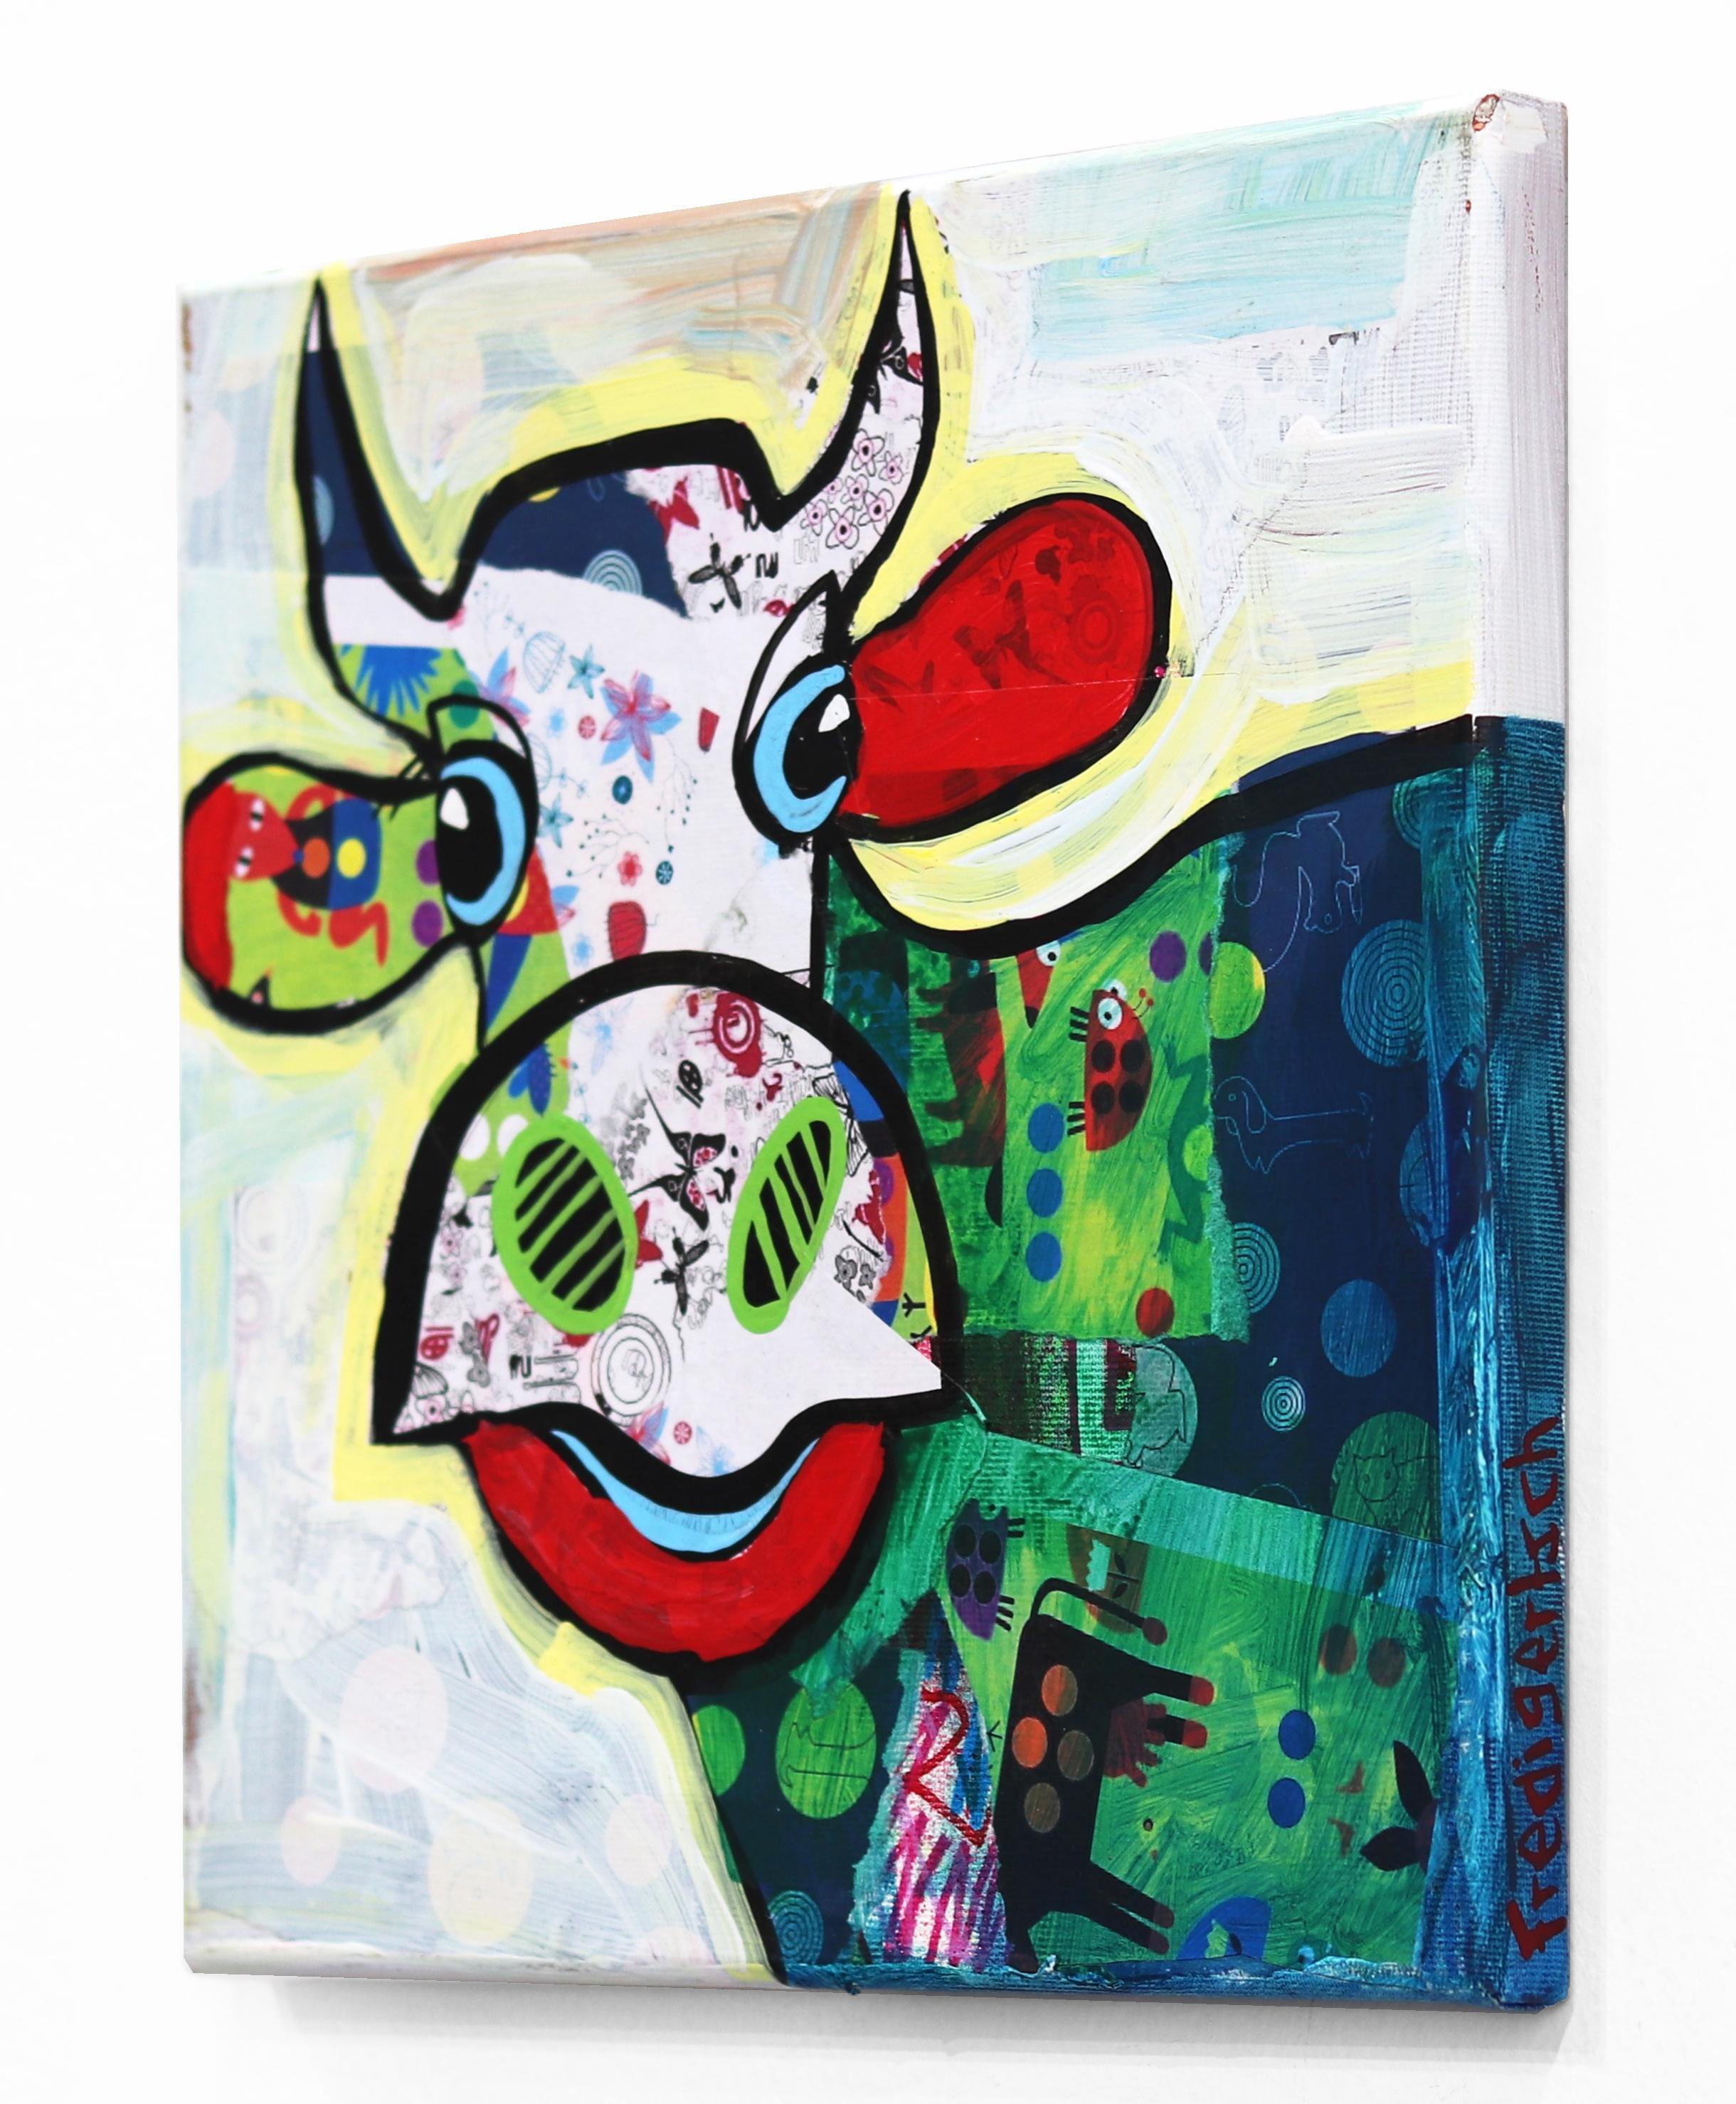 L'artiste suisse Fredi Artistics crée des peintures pop-folk art colorées et vivantes à partir d'un élément inépuisable : la vache Emmentaler. L'humour et l'optimisme sont des traits essentiels de l'artiste : 